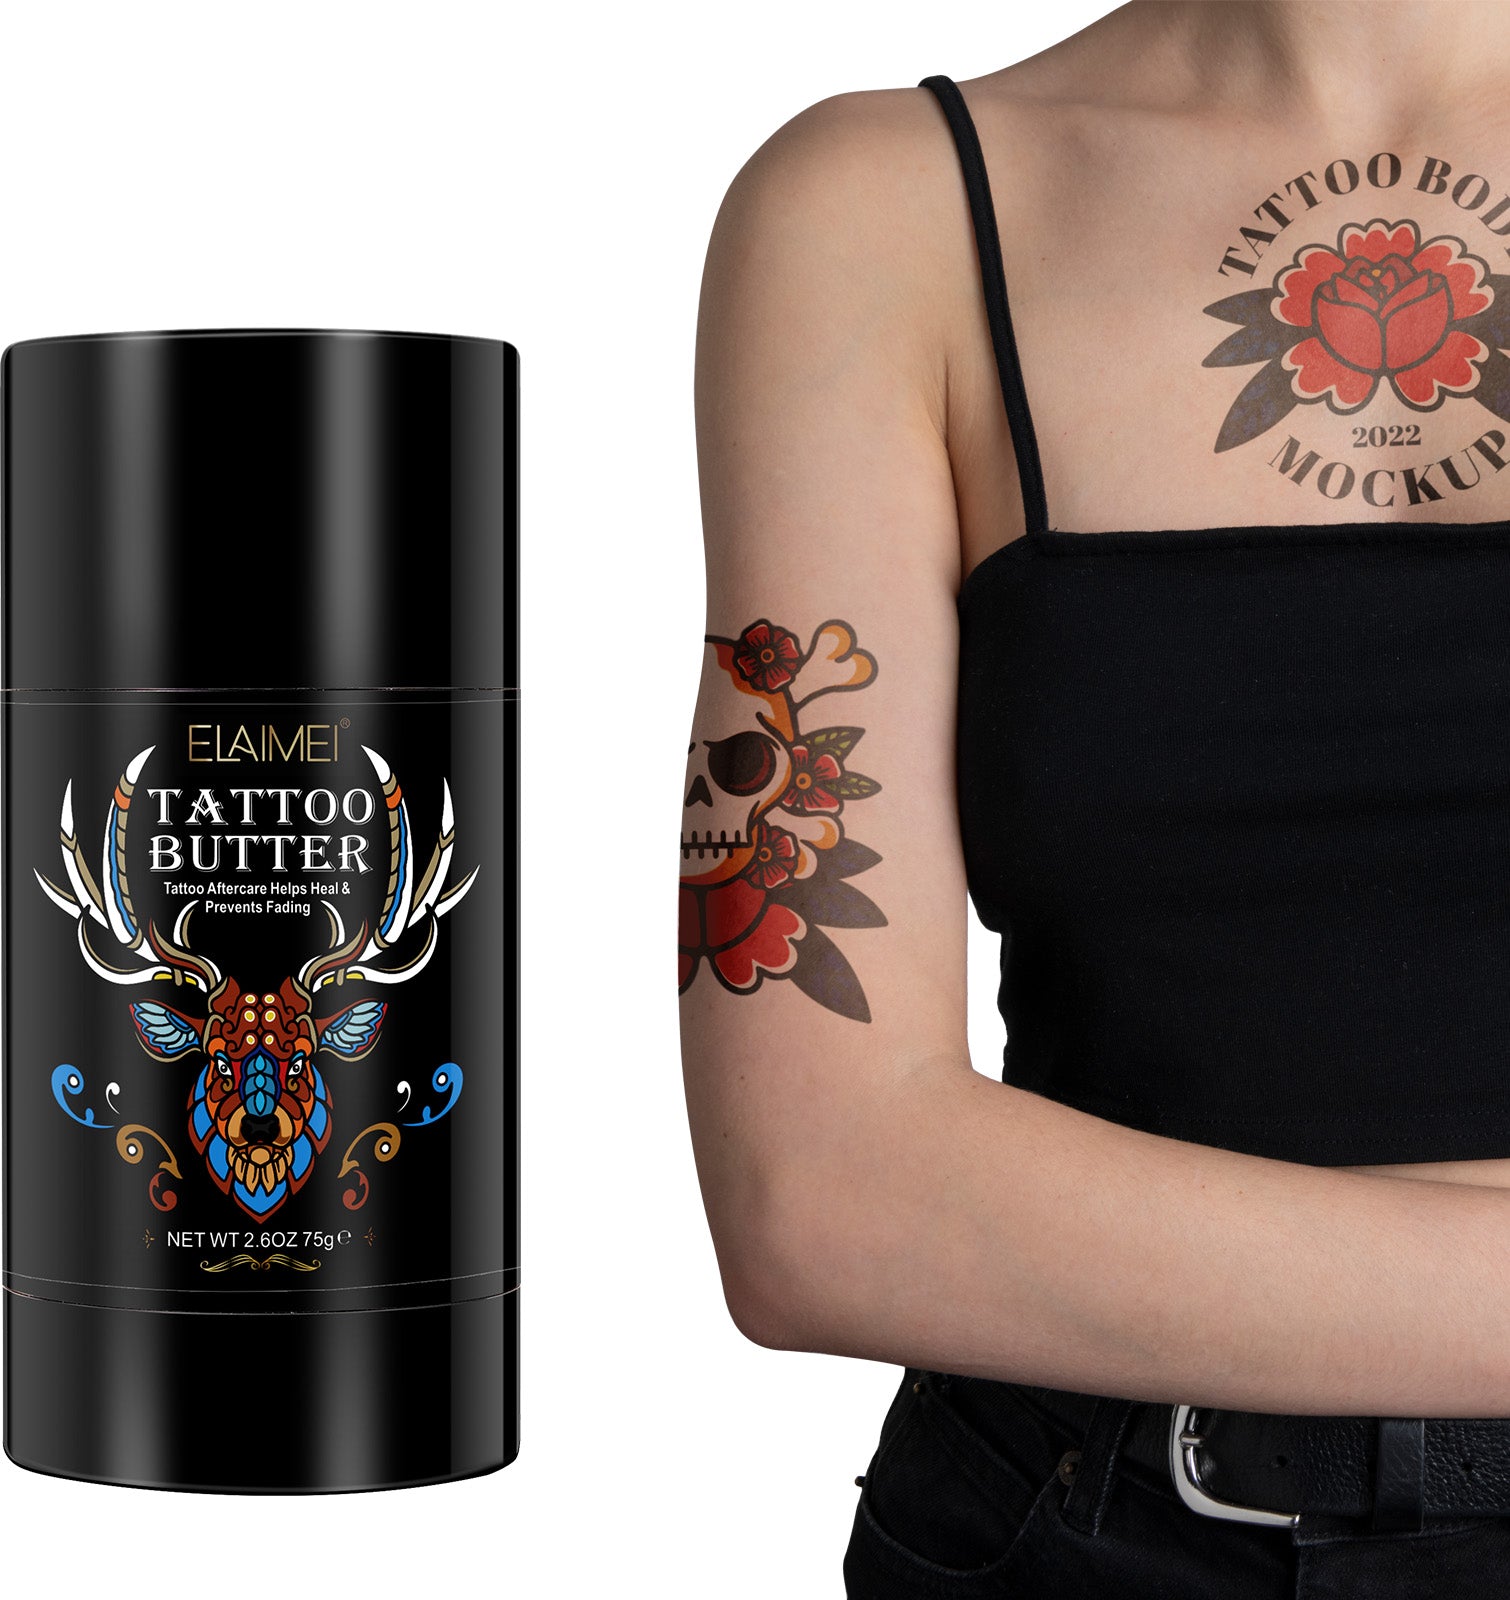 Hand Band Tattoo | Band tattoo, Wrist tattoos for guys, Arm band tattoo